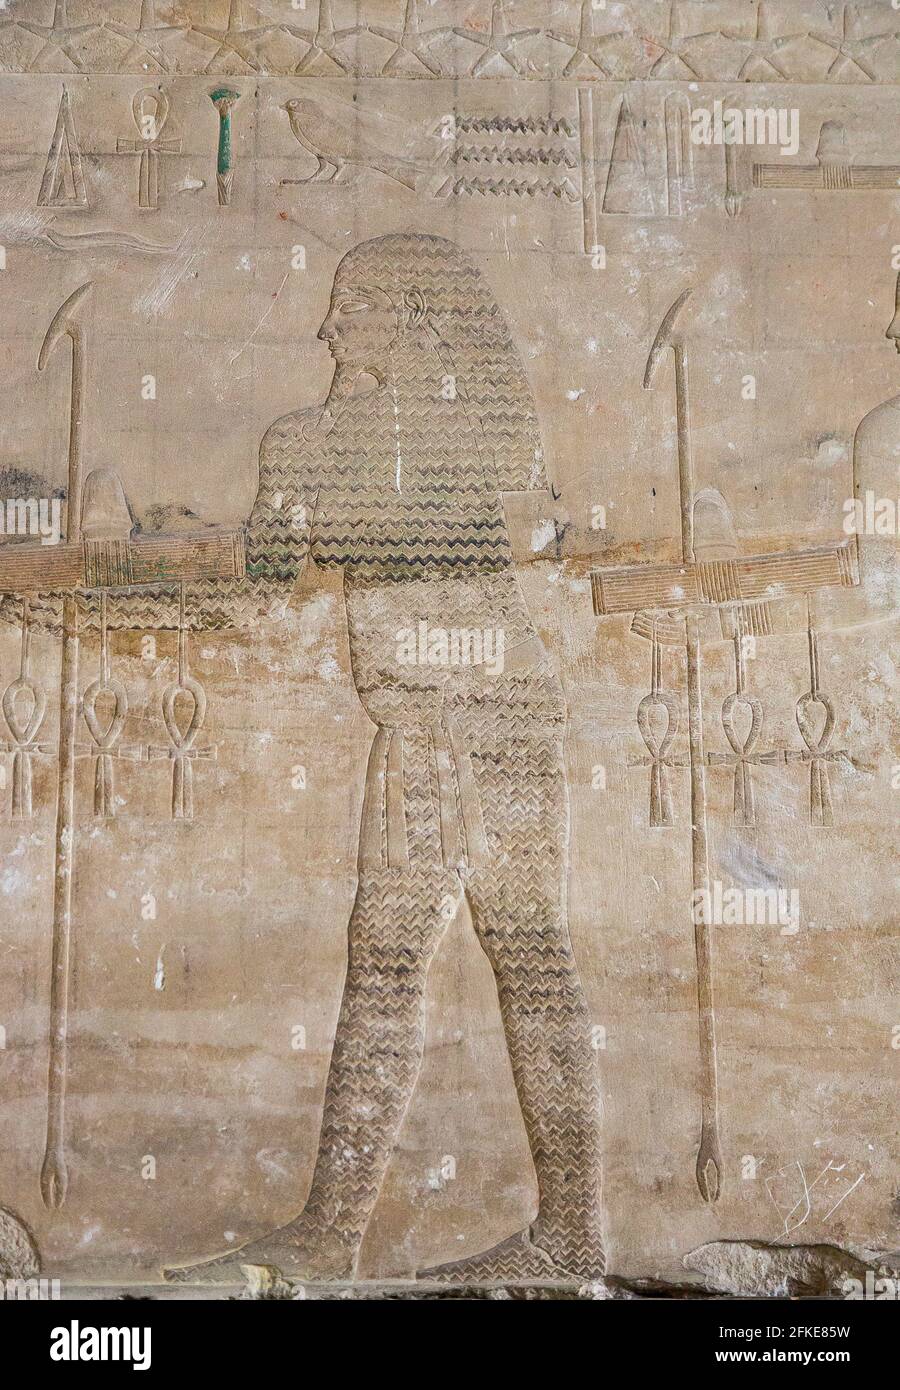 Kairo, Ägyptisches Museum, Sahure-Tempel in Abusir, Rozession der nilotischen Gottheiten : Ouadj-Our Bringing Signs Hotep, was und Ankh. Stockfoto